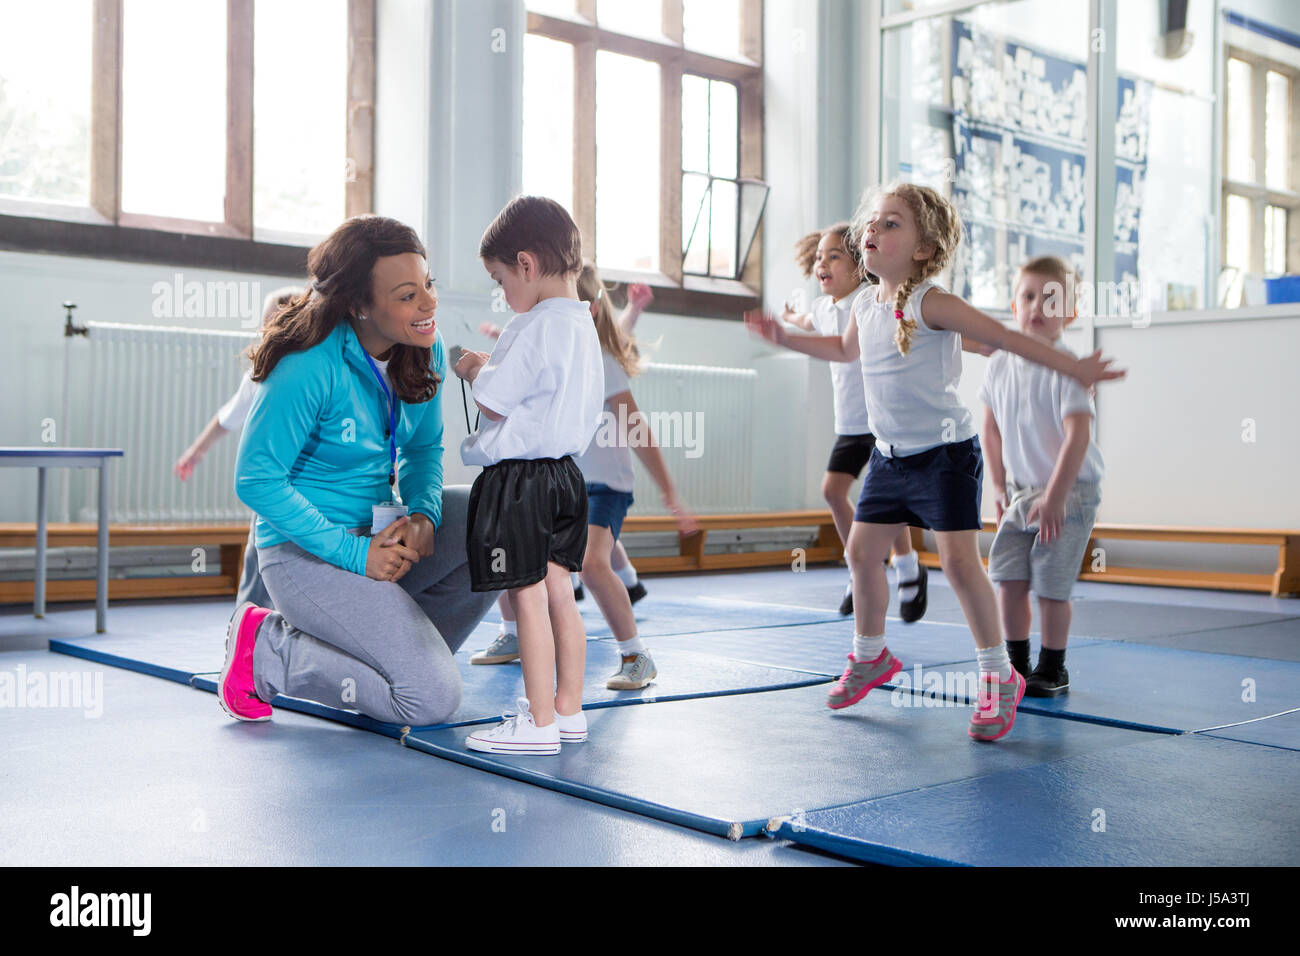 Kindergärtnerin, einer ihrer Schüler während einer Sportunterricht beruhigend. Stockfoto